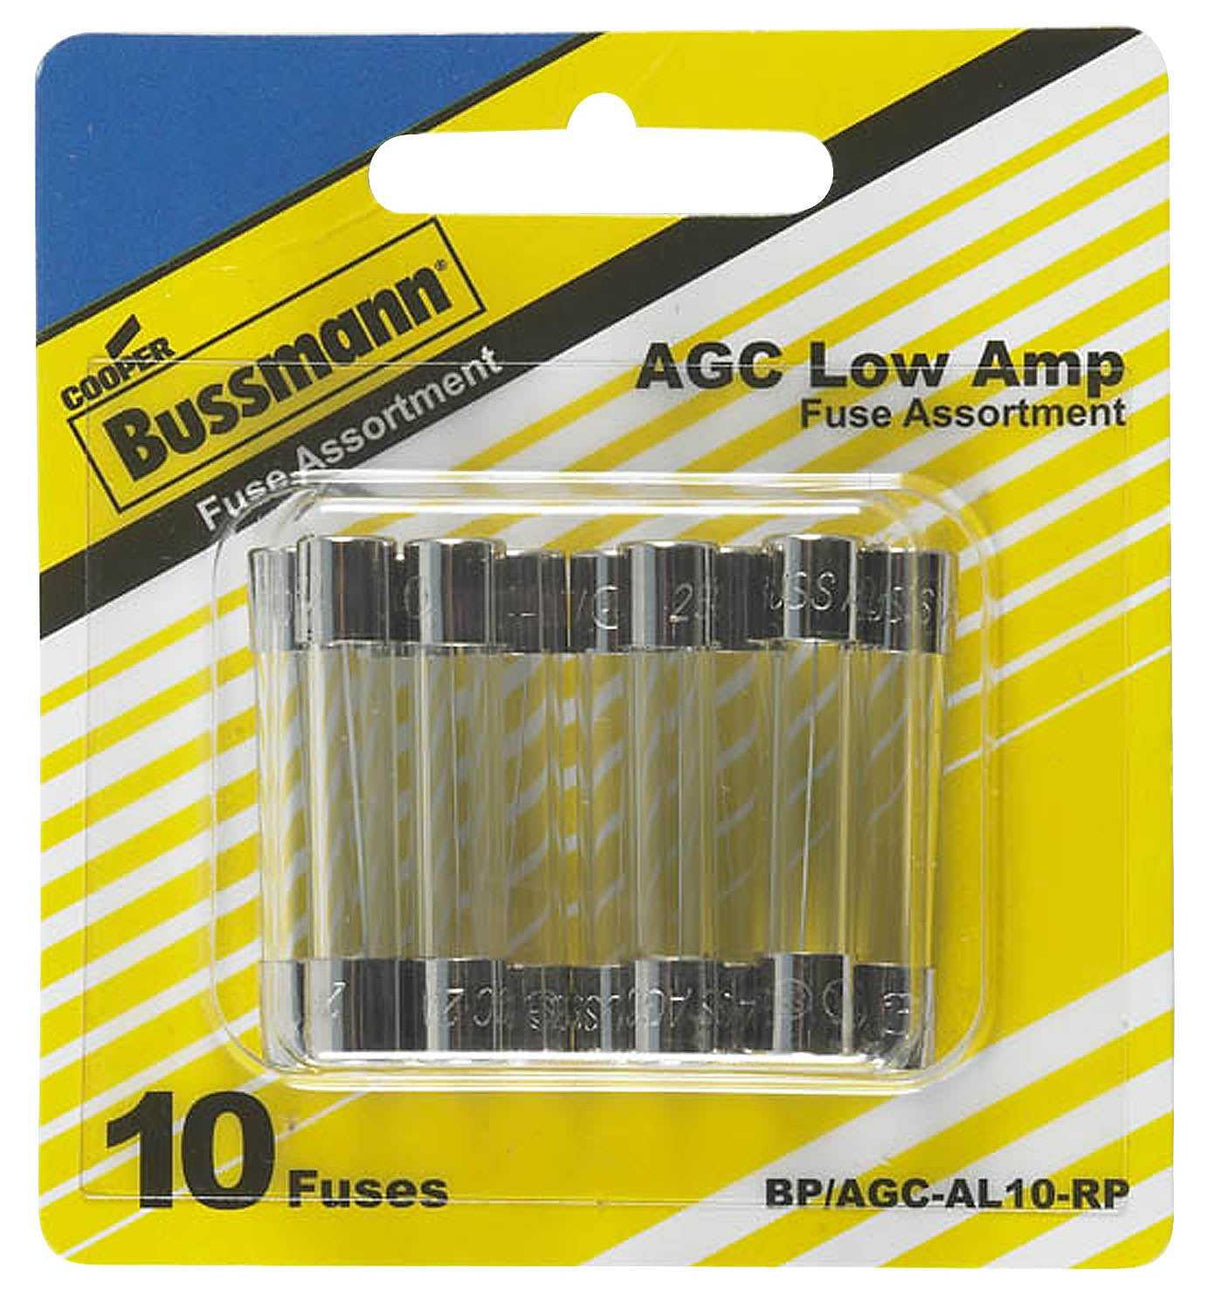 BP/AGC-AL10-RP Bussman Fuse Assortment AGC Glass Fuse